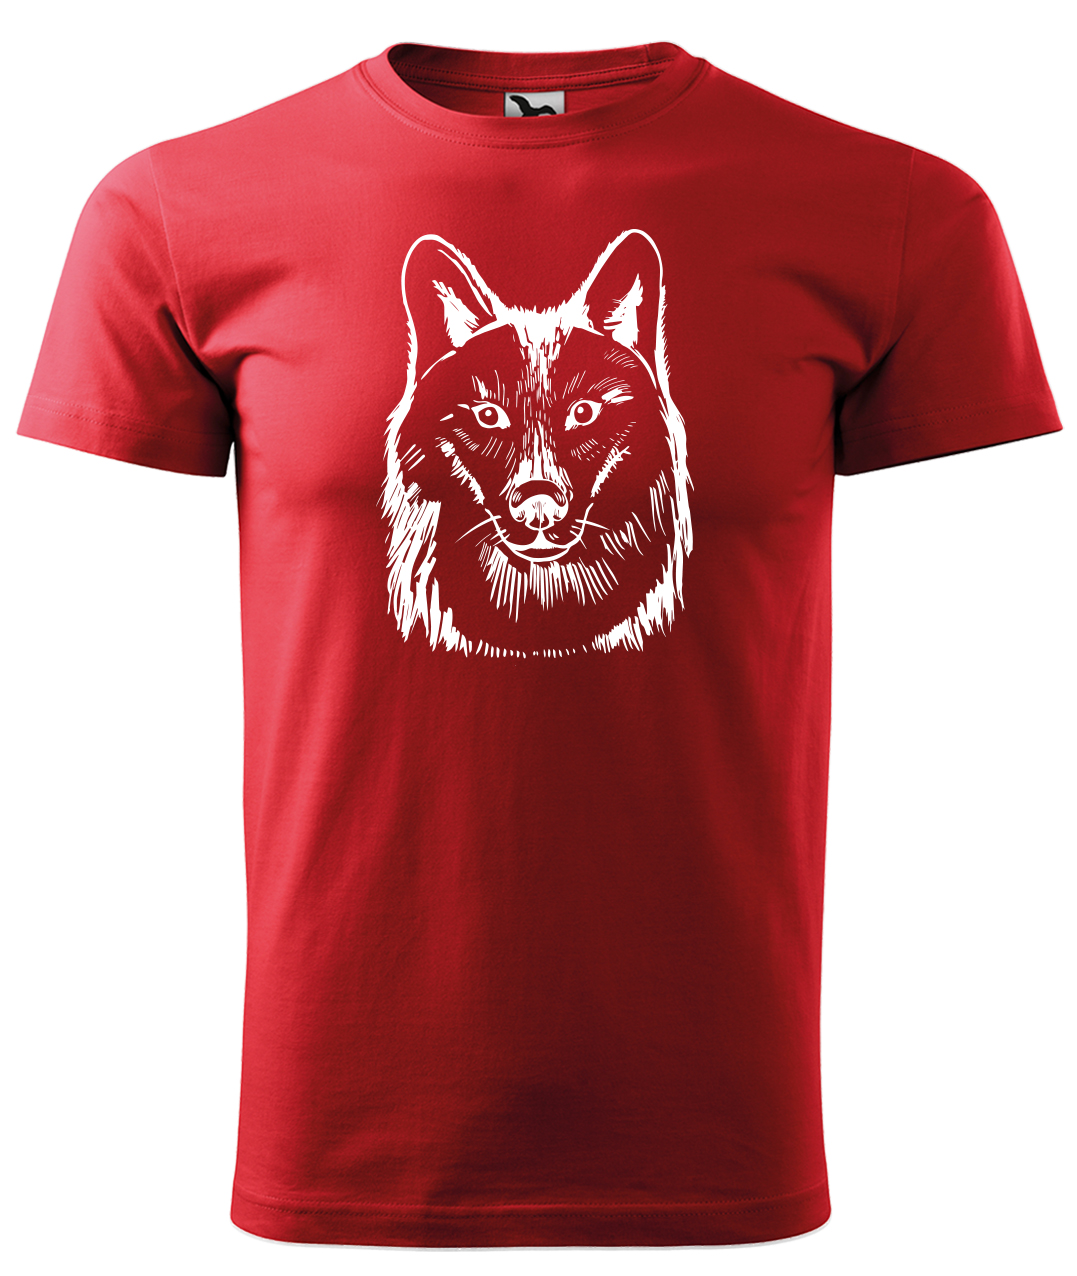 Dětské tričko s vlkem - Kresba vlka Velikost: 12 let / 158 cm, Barva: Červená (07), Délka rukávu: Krátký rukáv